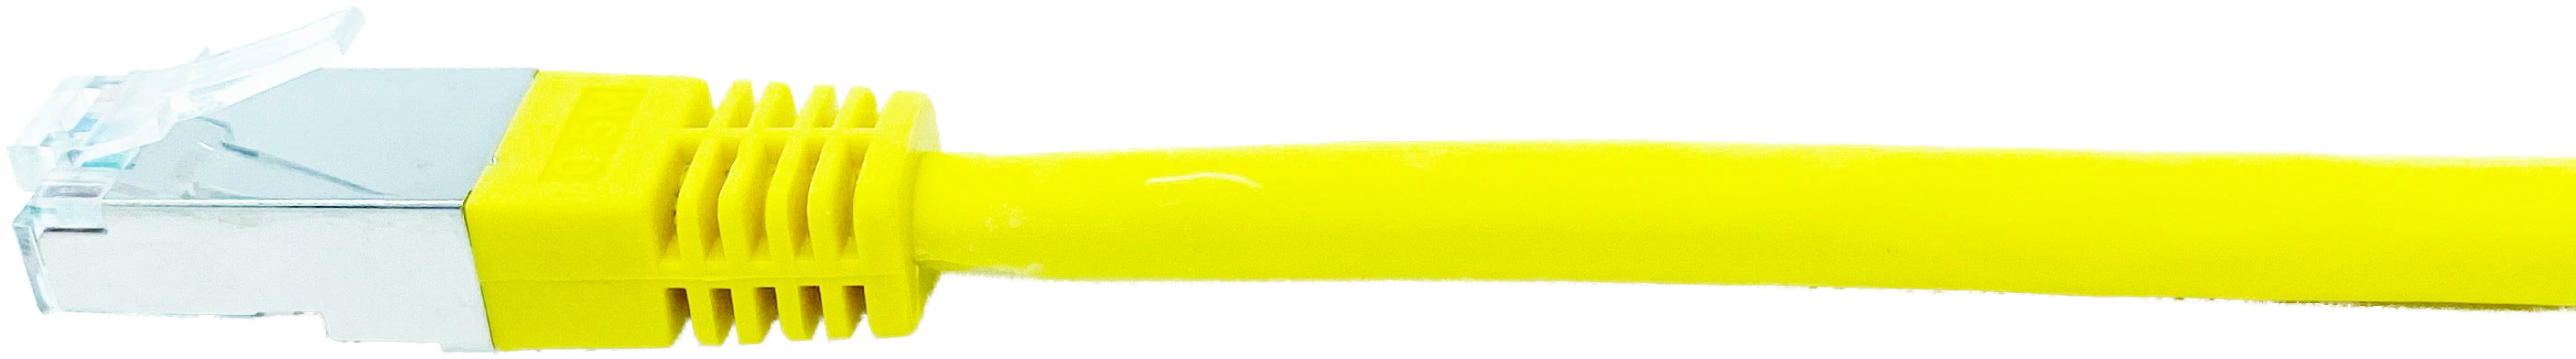 Kupferpatchkabel Cat.6 250MHz 0,25m gelb